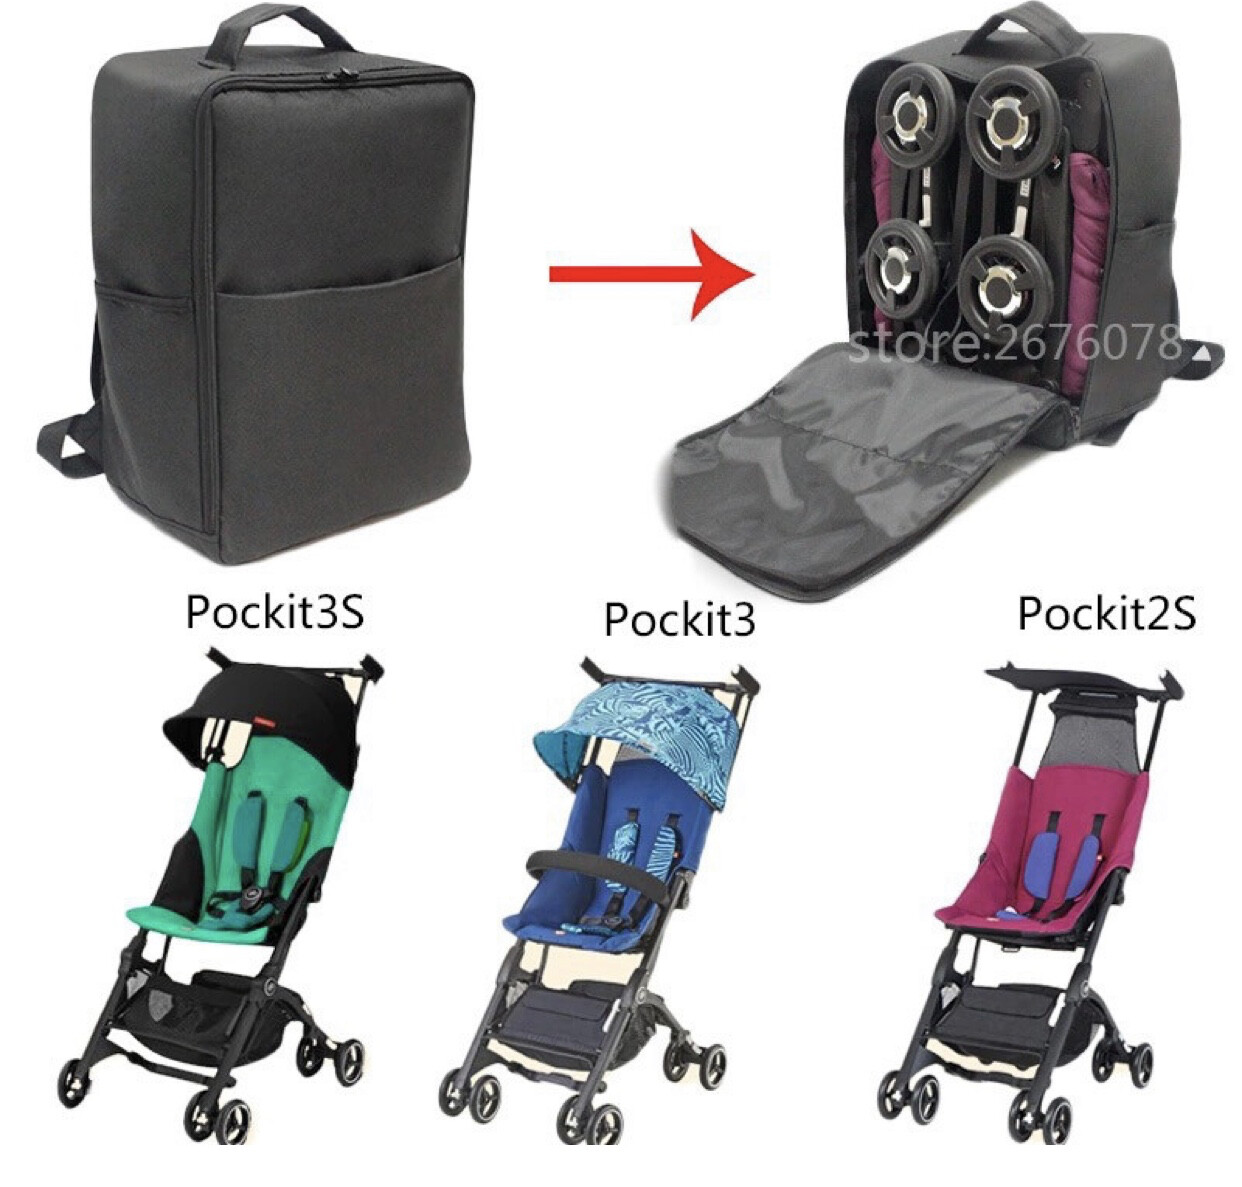 pockit stroller backpack